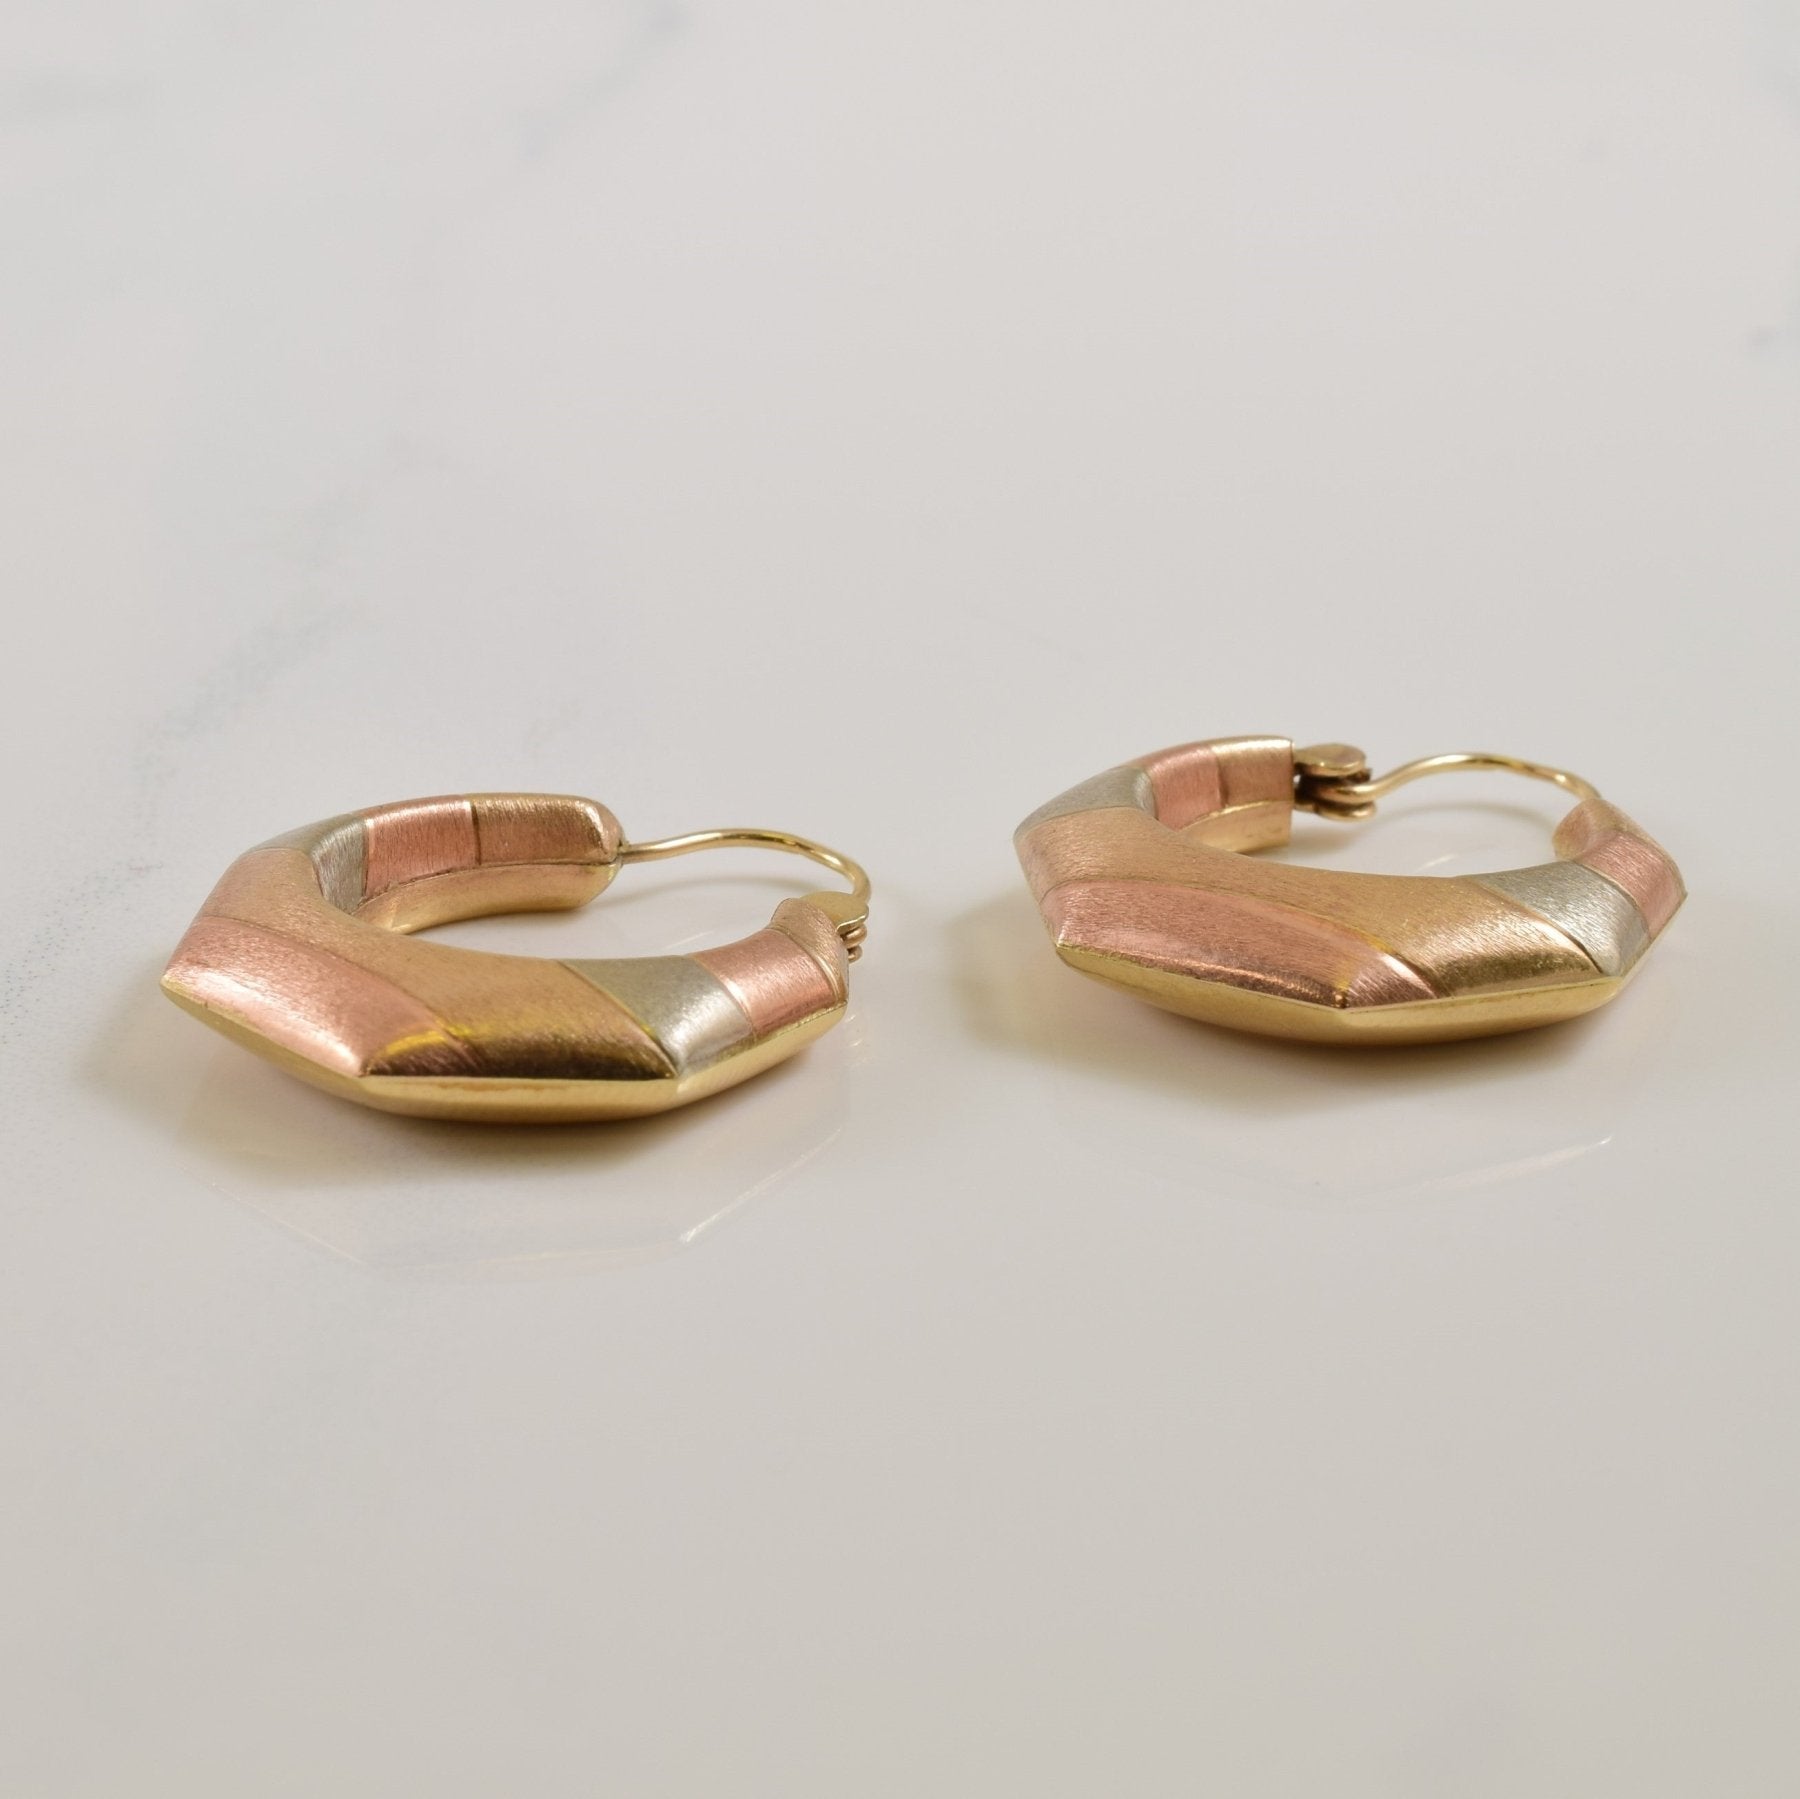 10k Tri Tone Gold Hoop Earrings | - 100 Ways